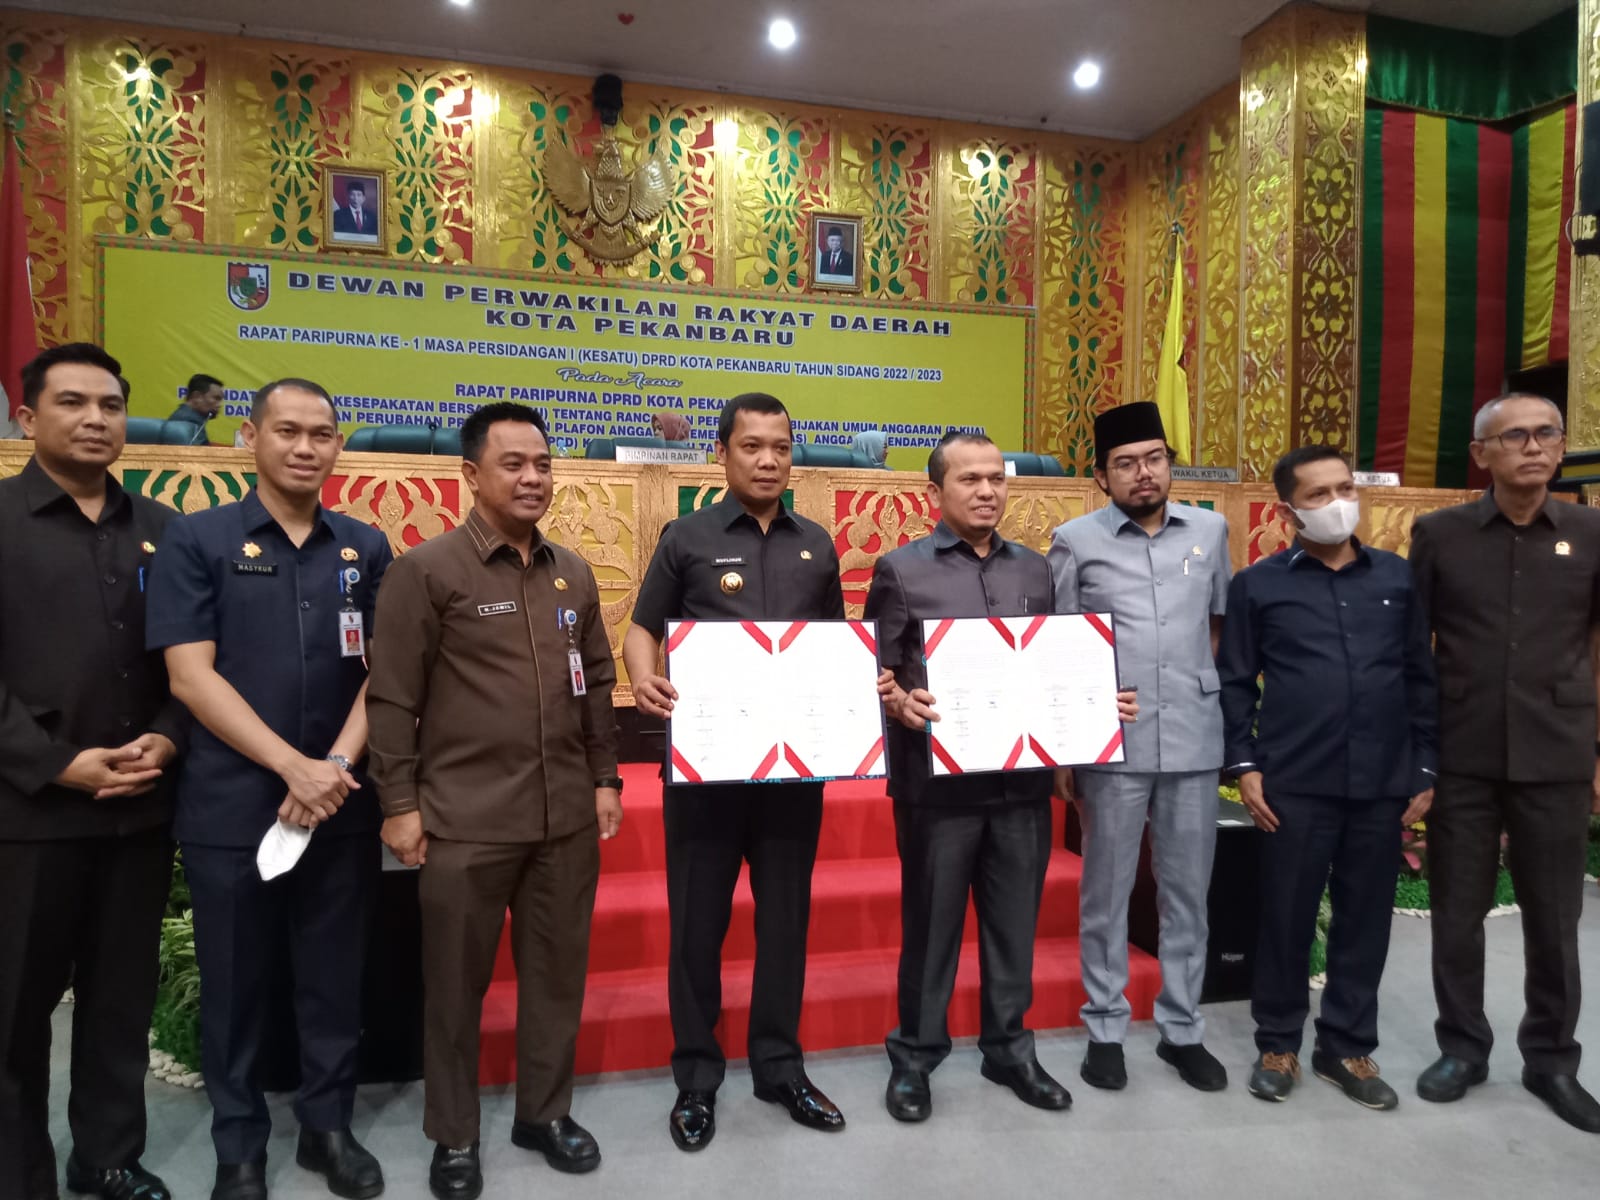 PJ Walikota Pekanbaru Muflihun dan Pimpinan DPRD Kota Pekanbaru serta Sekda berphoto bersama